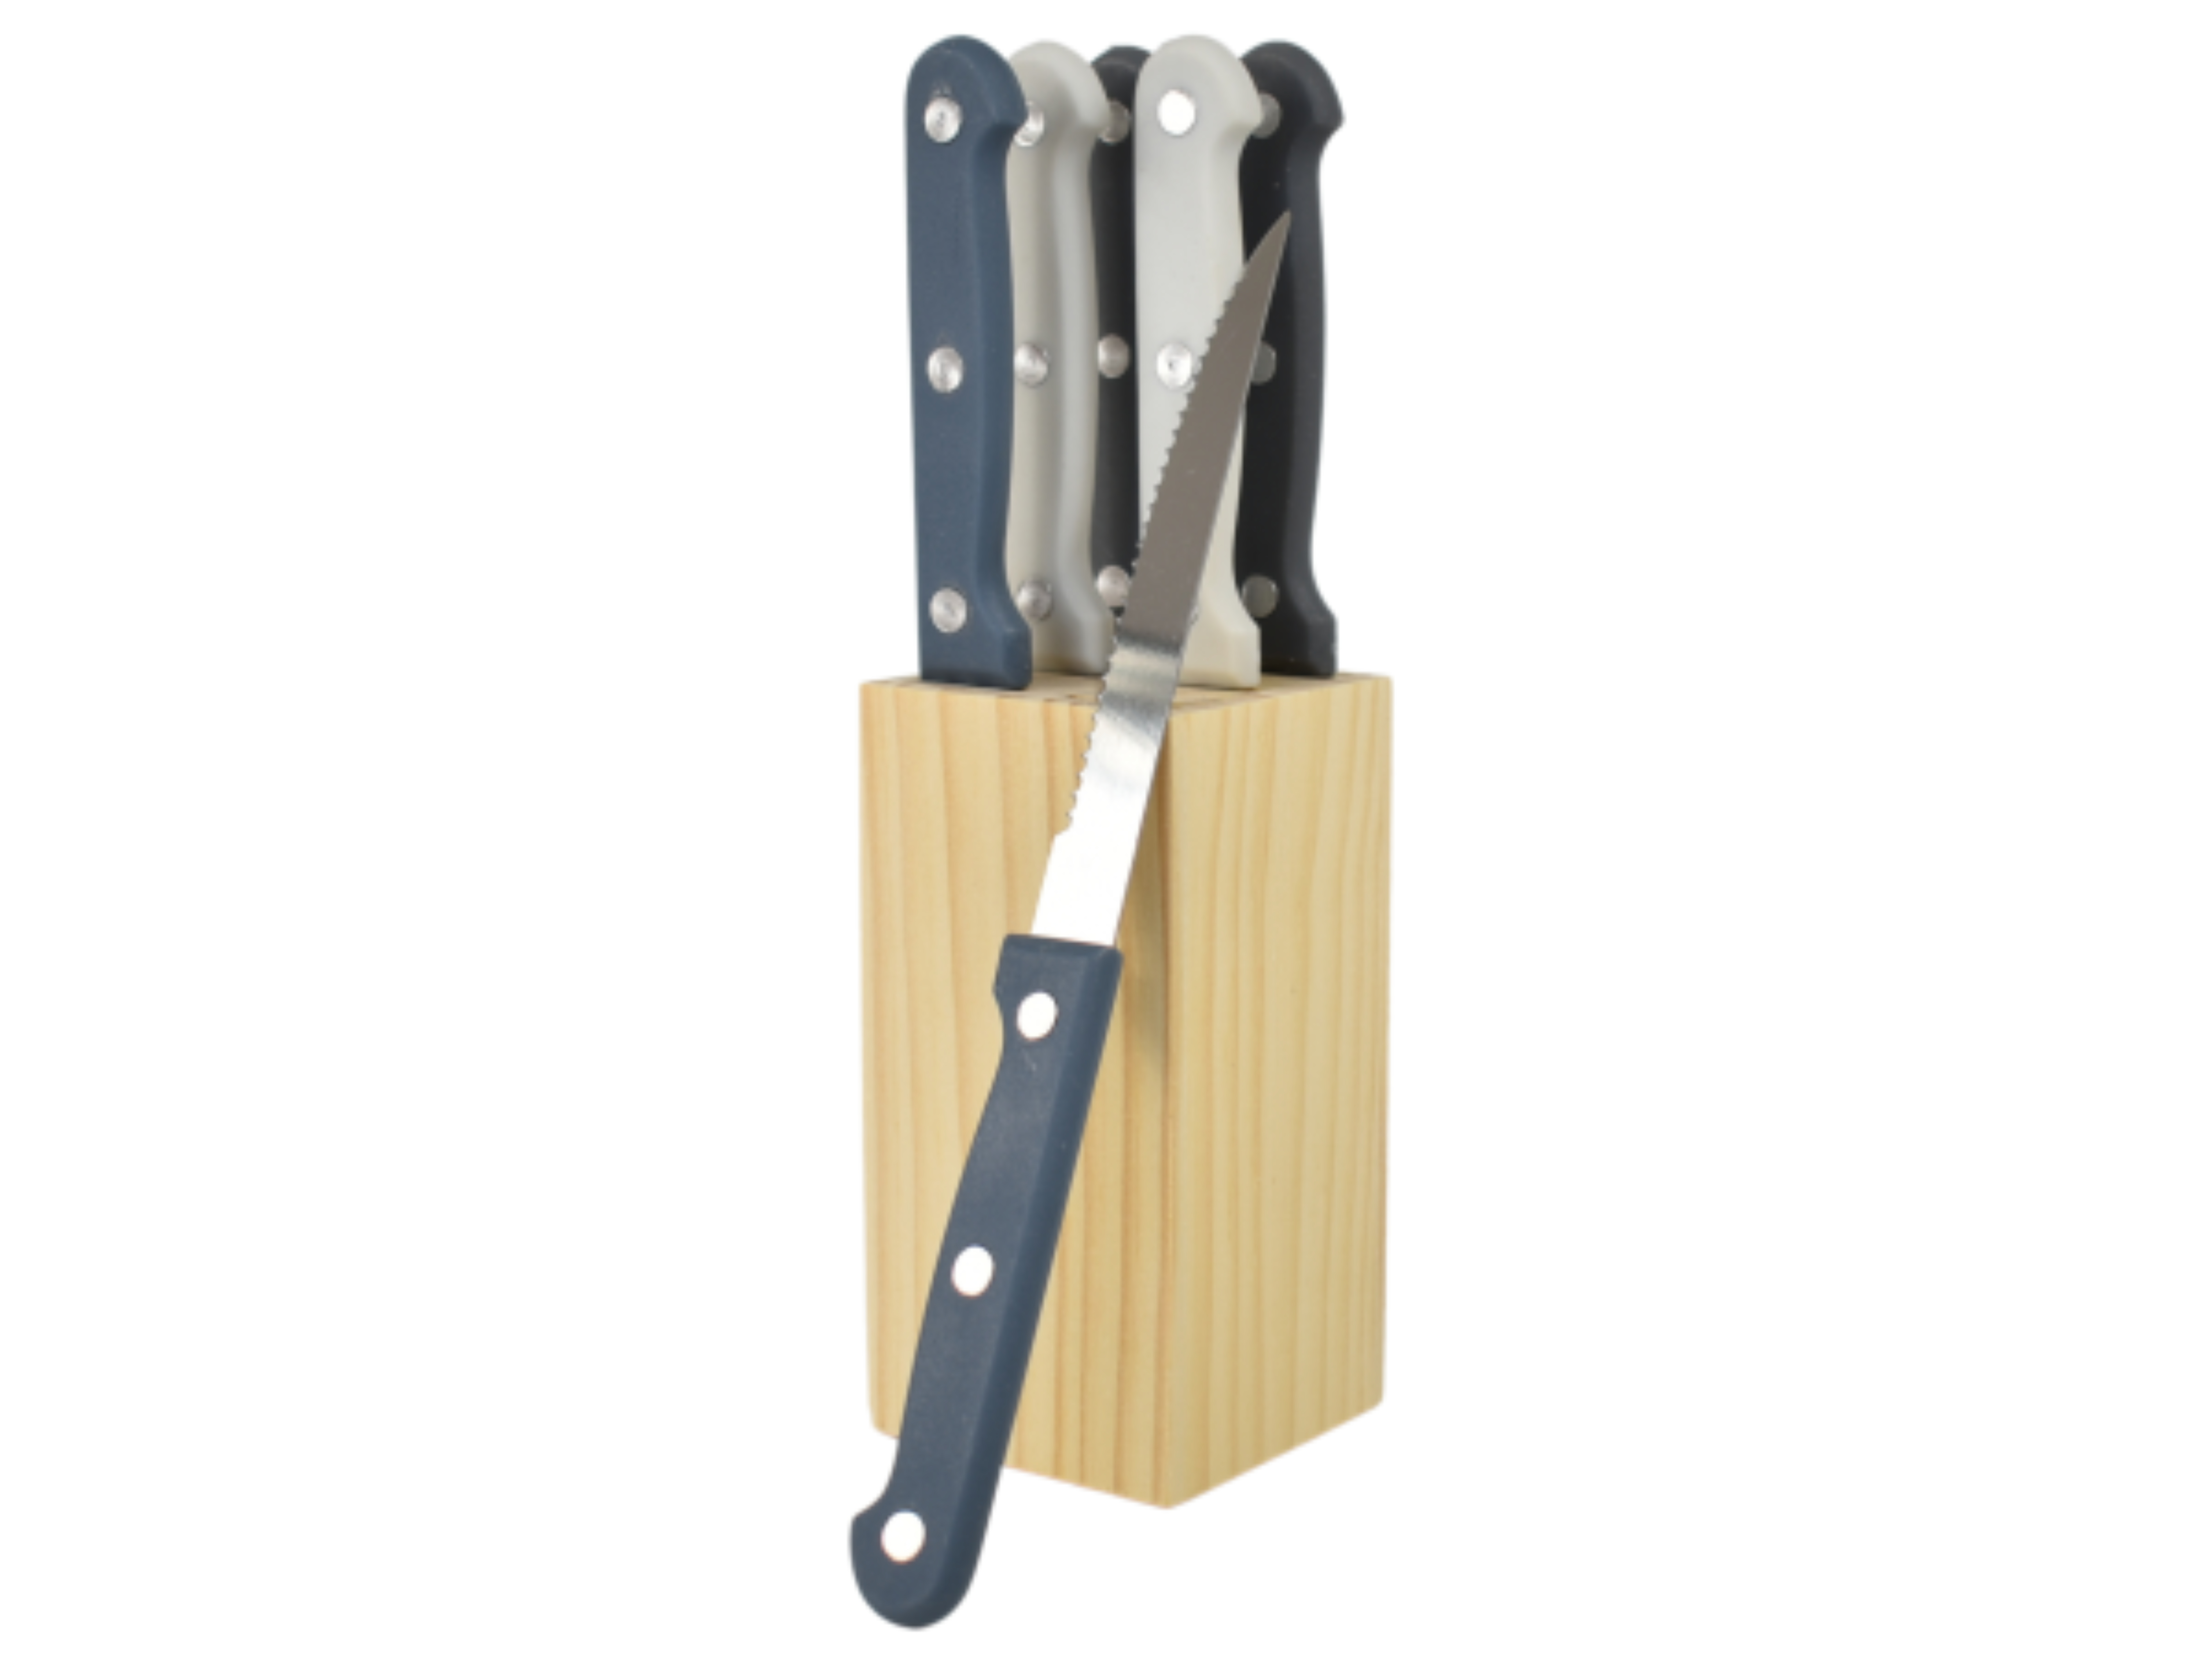 Steakmesser Set mit Holzblock, Küchenmesser, 6-tlg. + Block